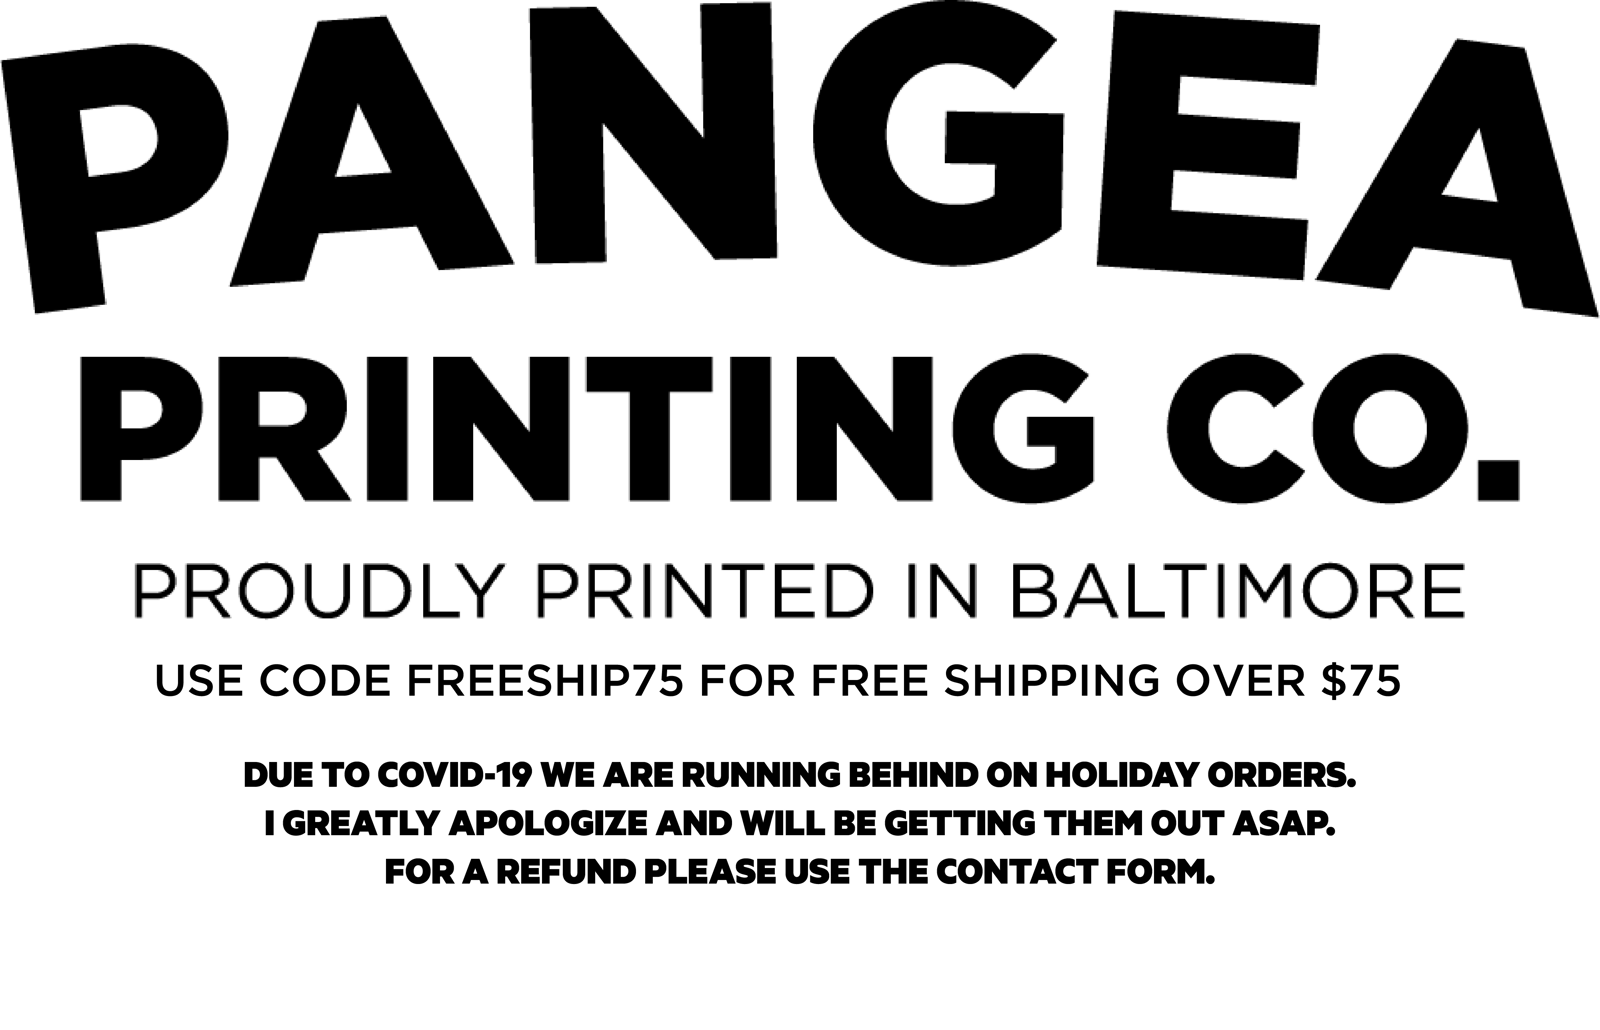 dubbellaag Wissen Identificeren Captain Chesapeake Shirt / Pangea Printing Co.